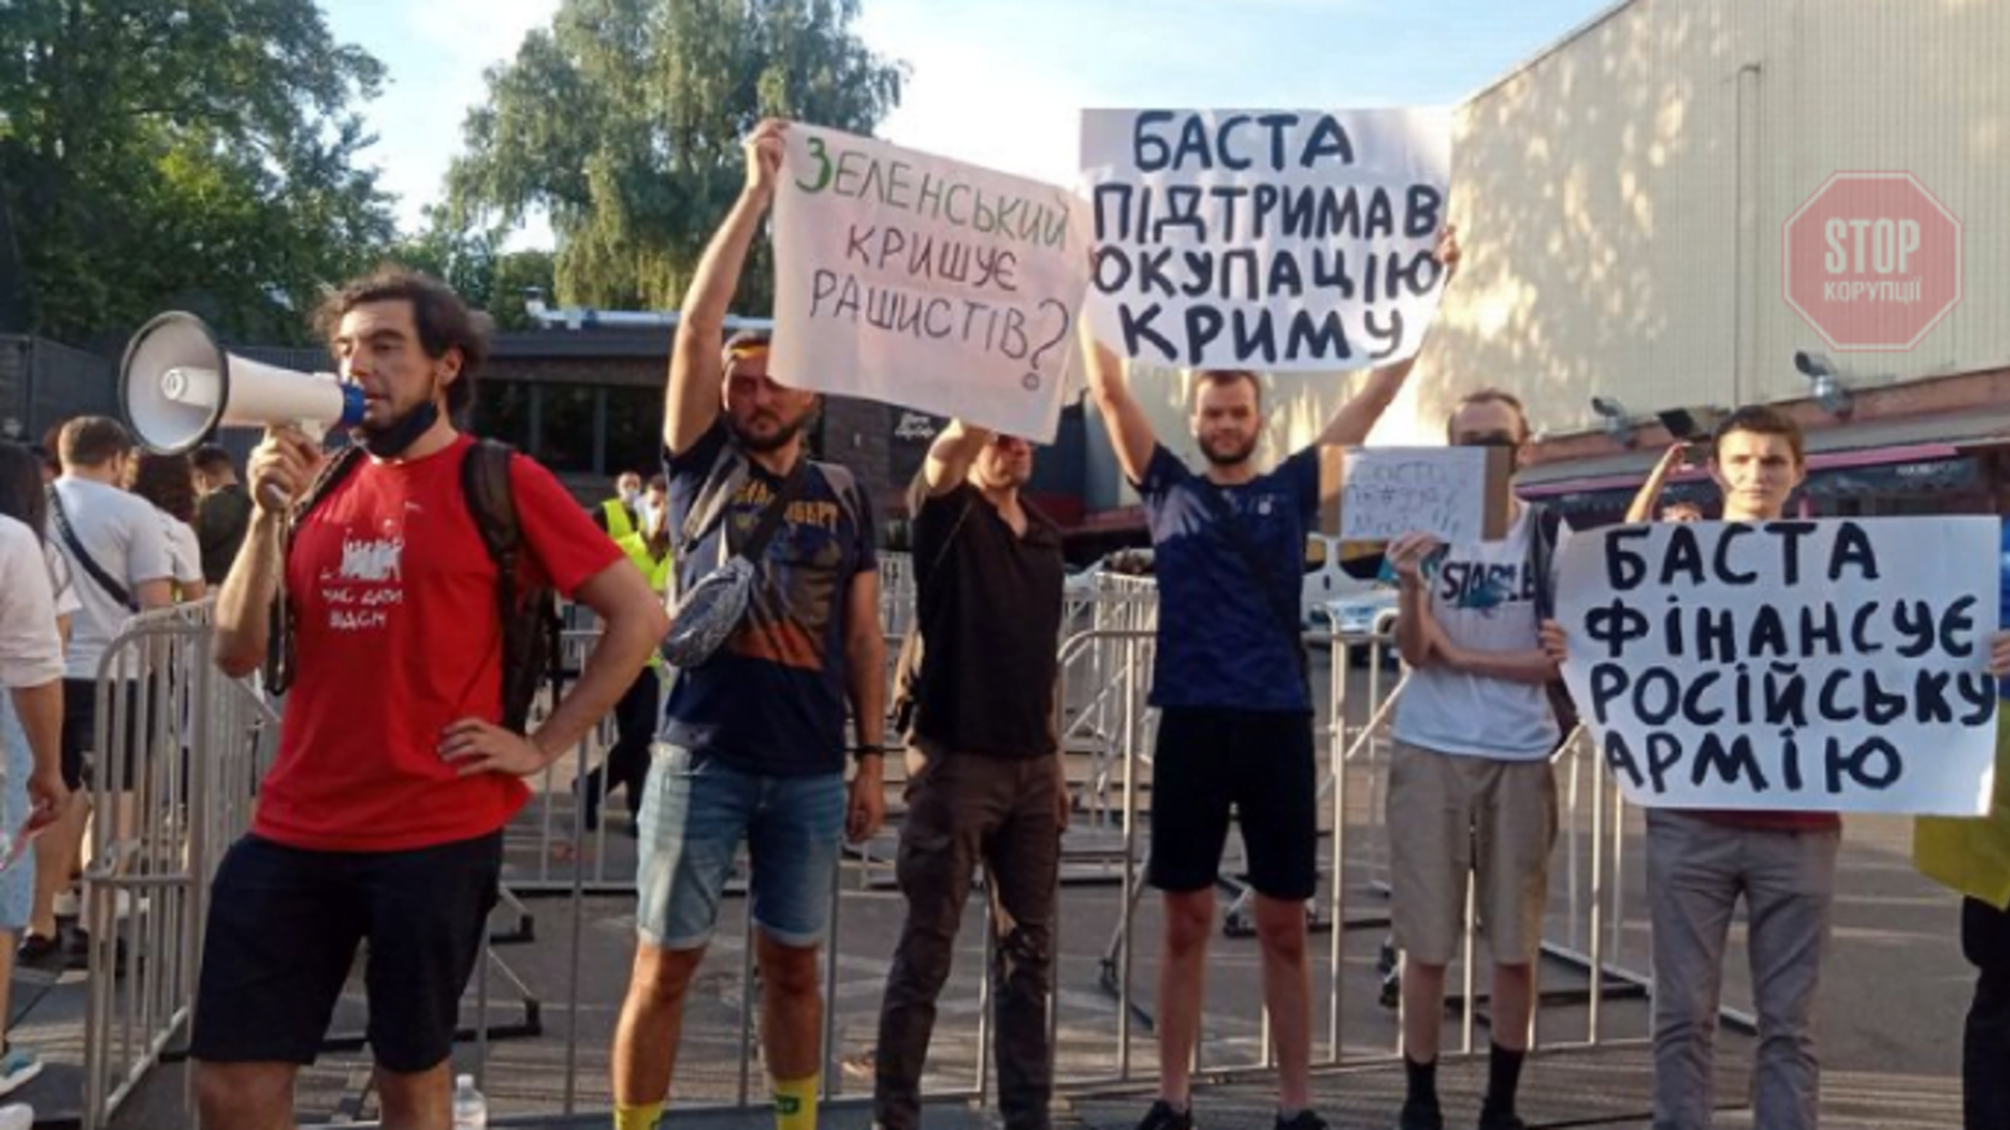 'Зеленский крышует рашистов?': в столице активисты пытаются сорвать концерт рэпера Басты